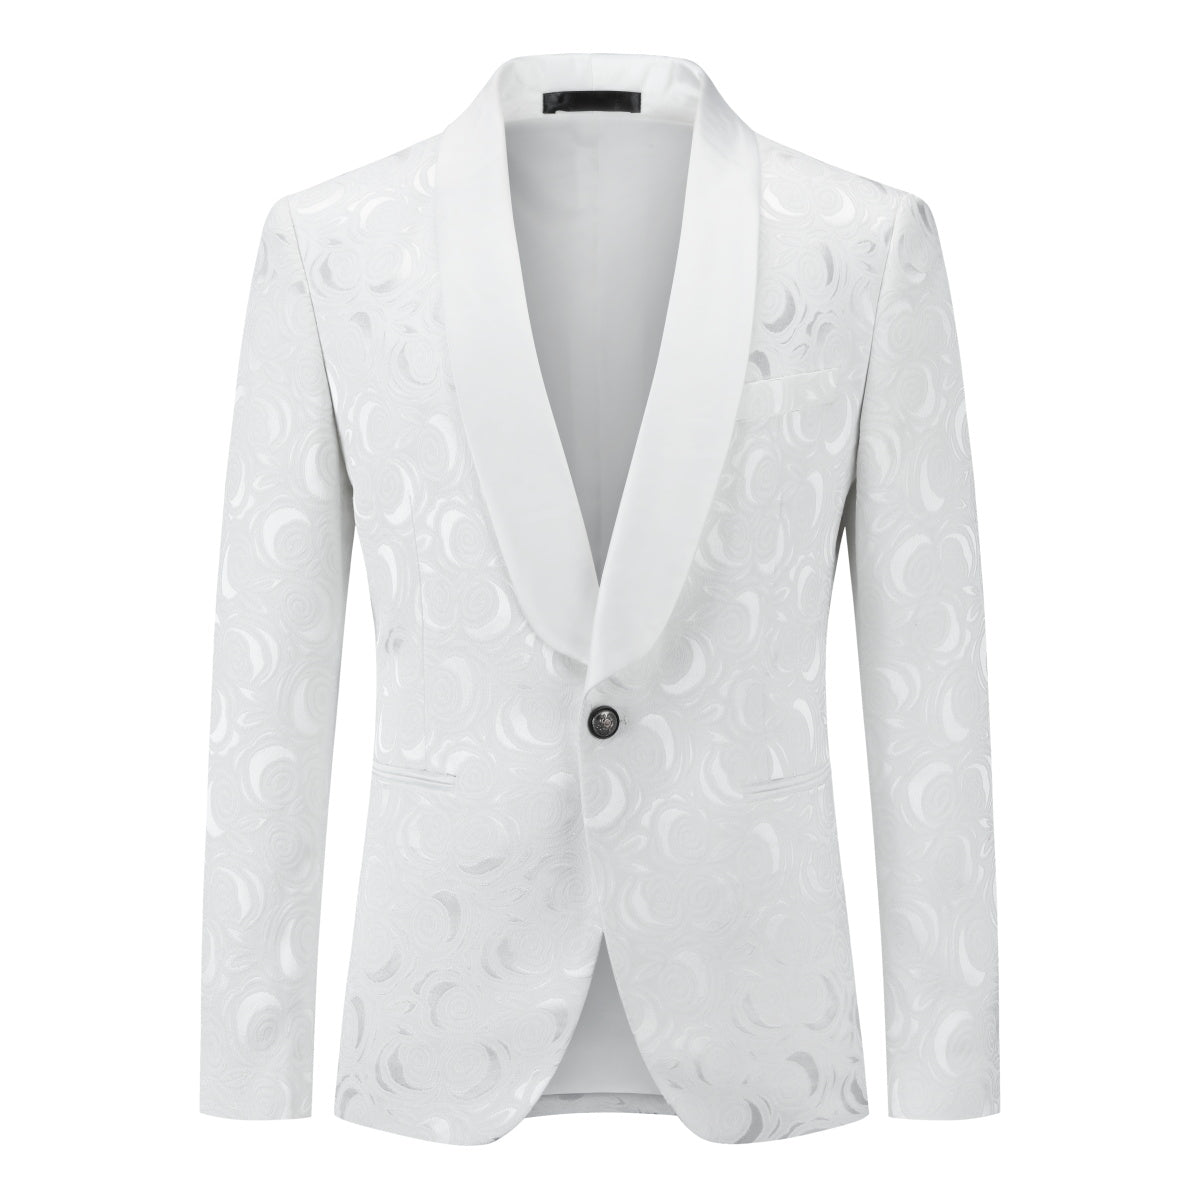 White Paisley Suit 2-Piece Slim Fit Suit